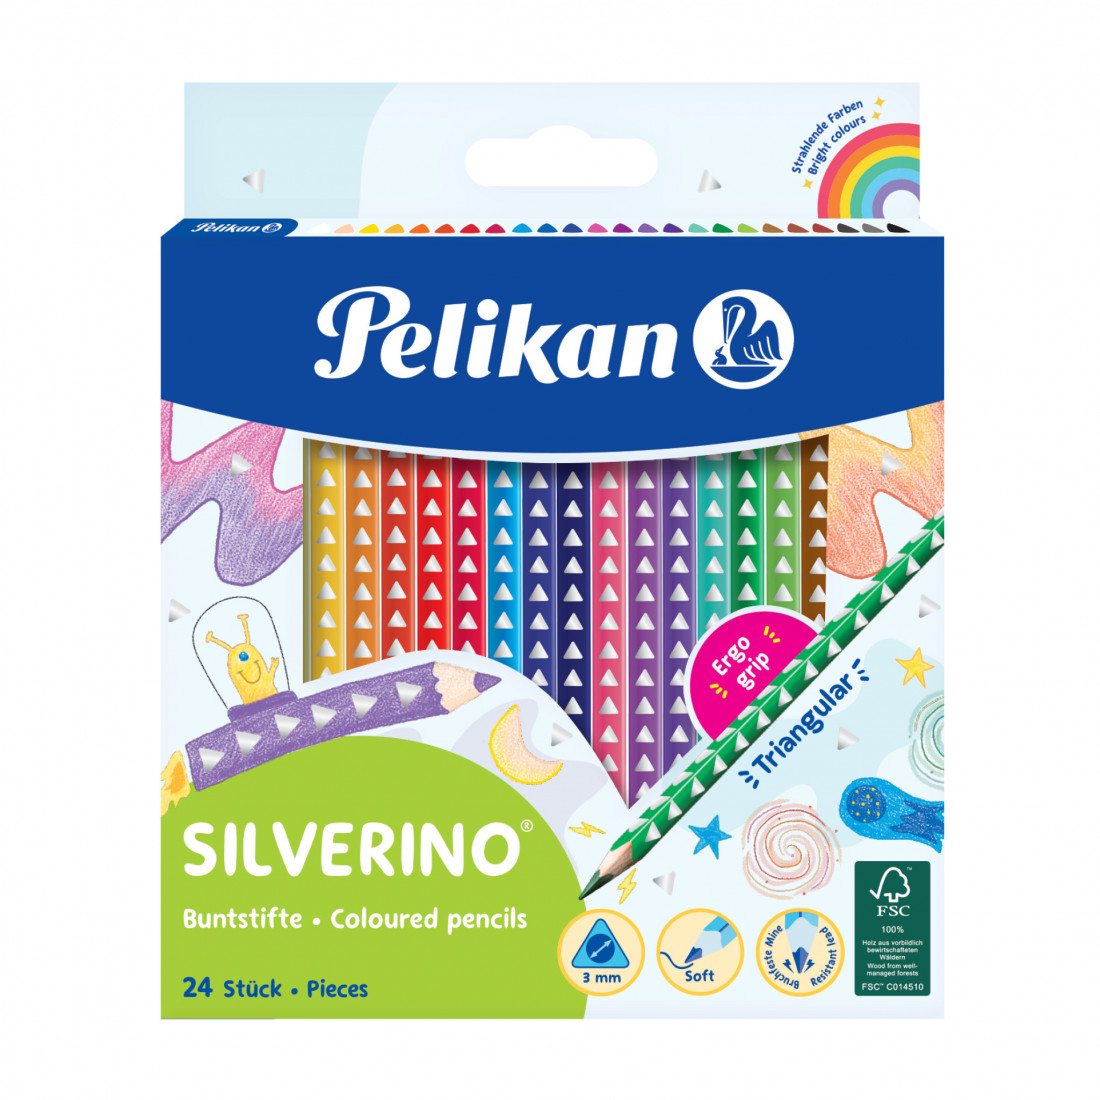 Pelikan  Silverino Buntstifte  Thick Coloured Pencils 24 pieces  700665